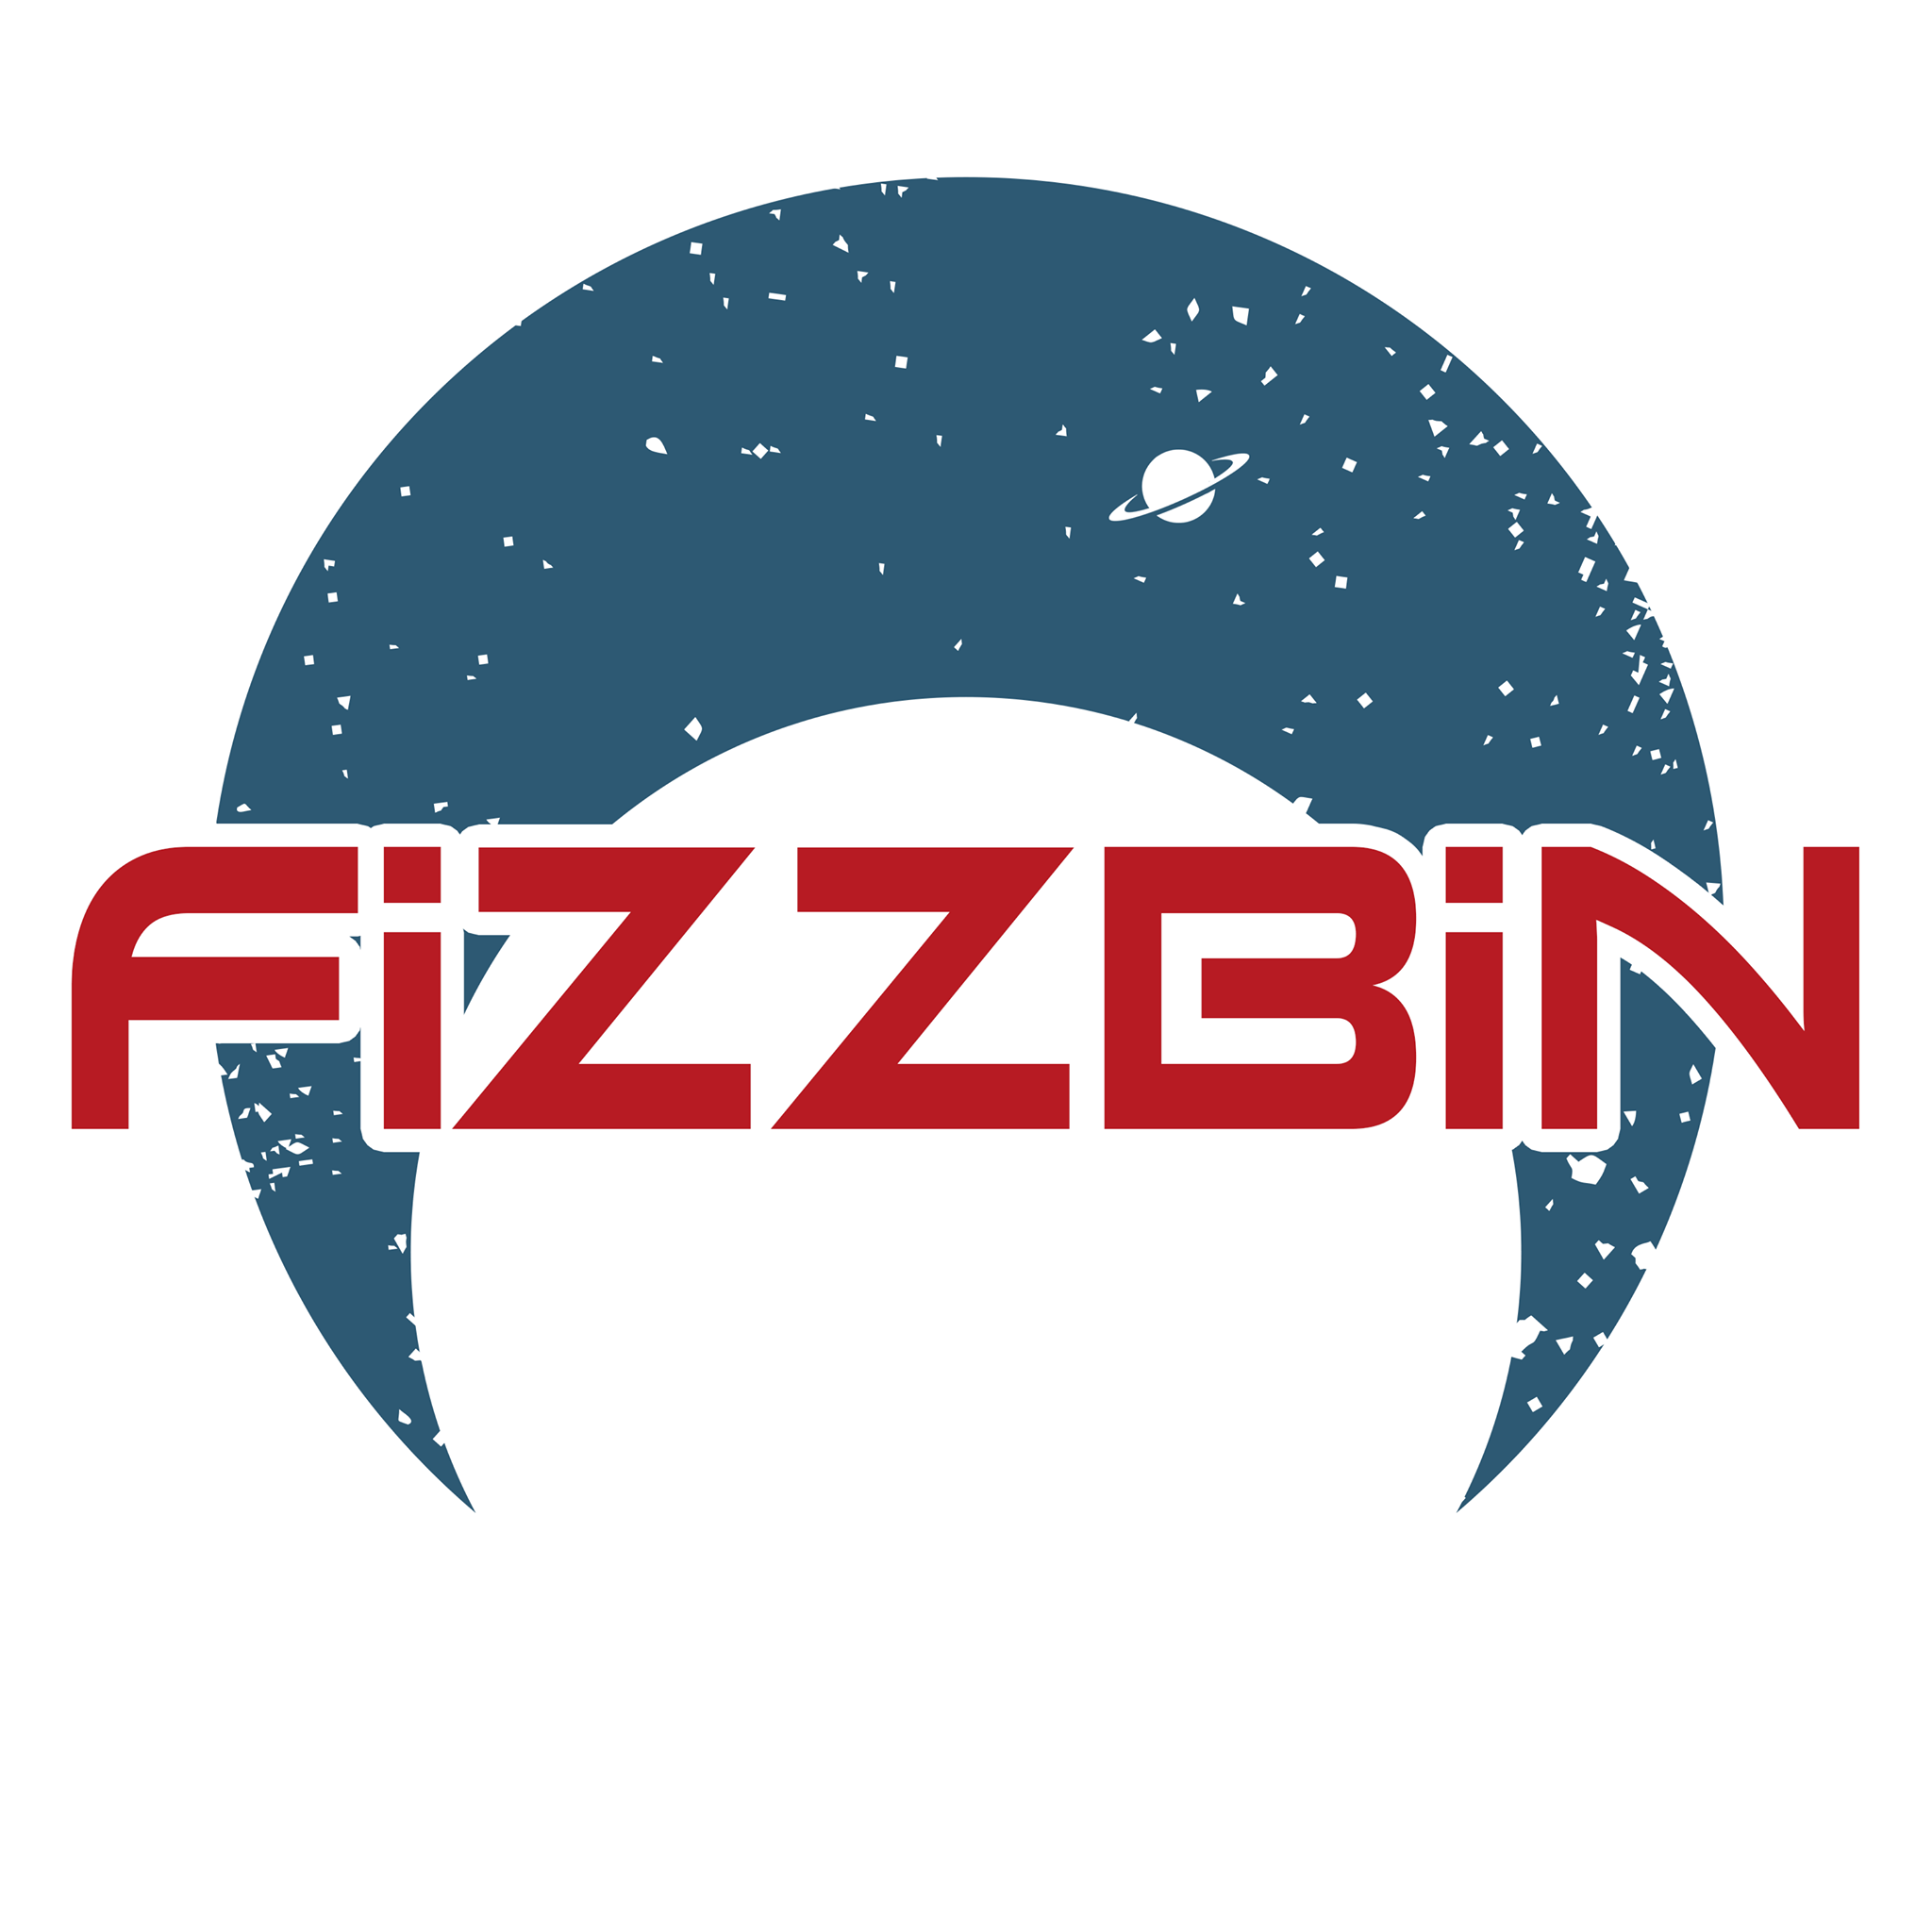 Fizzbin!